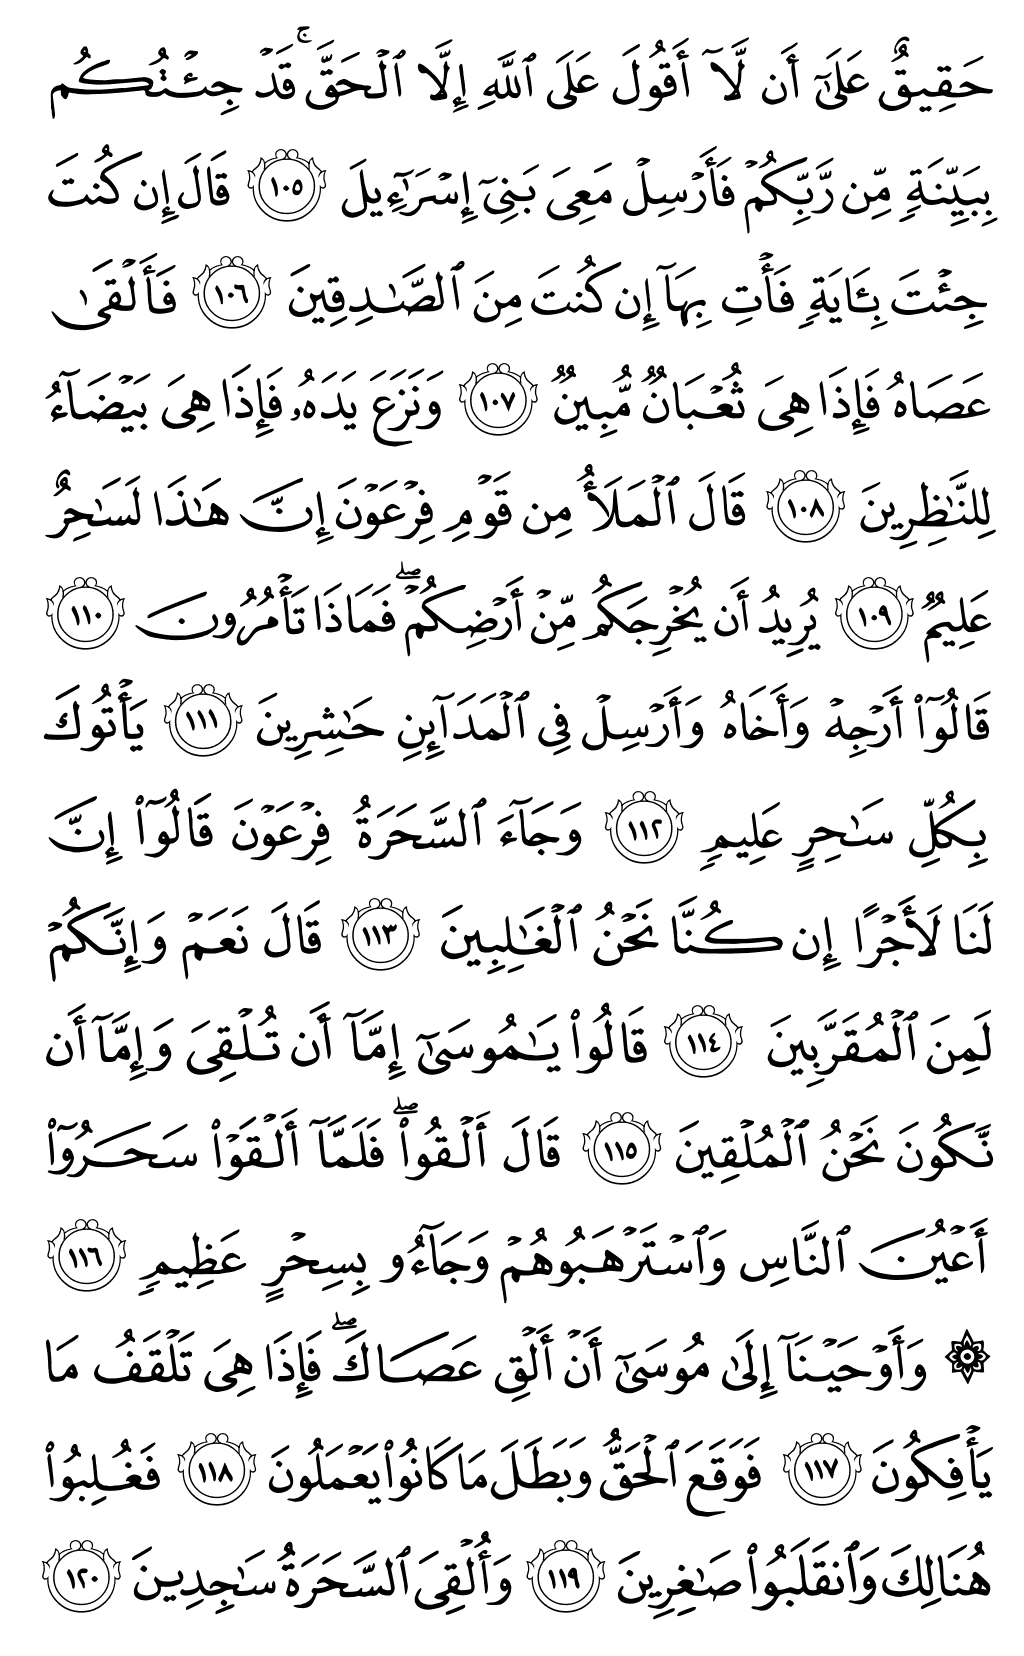 الصفحة رقم 164 من القرآن الكريم